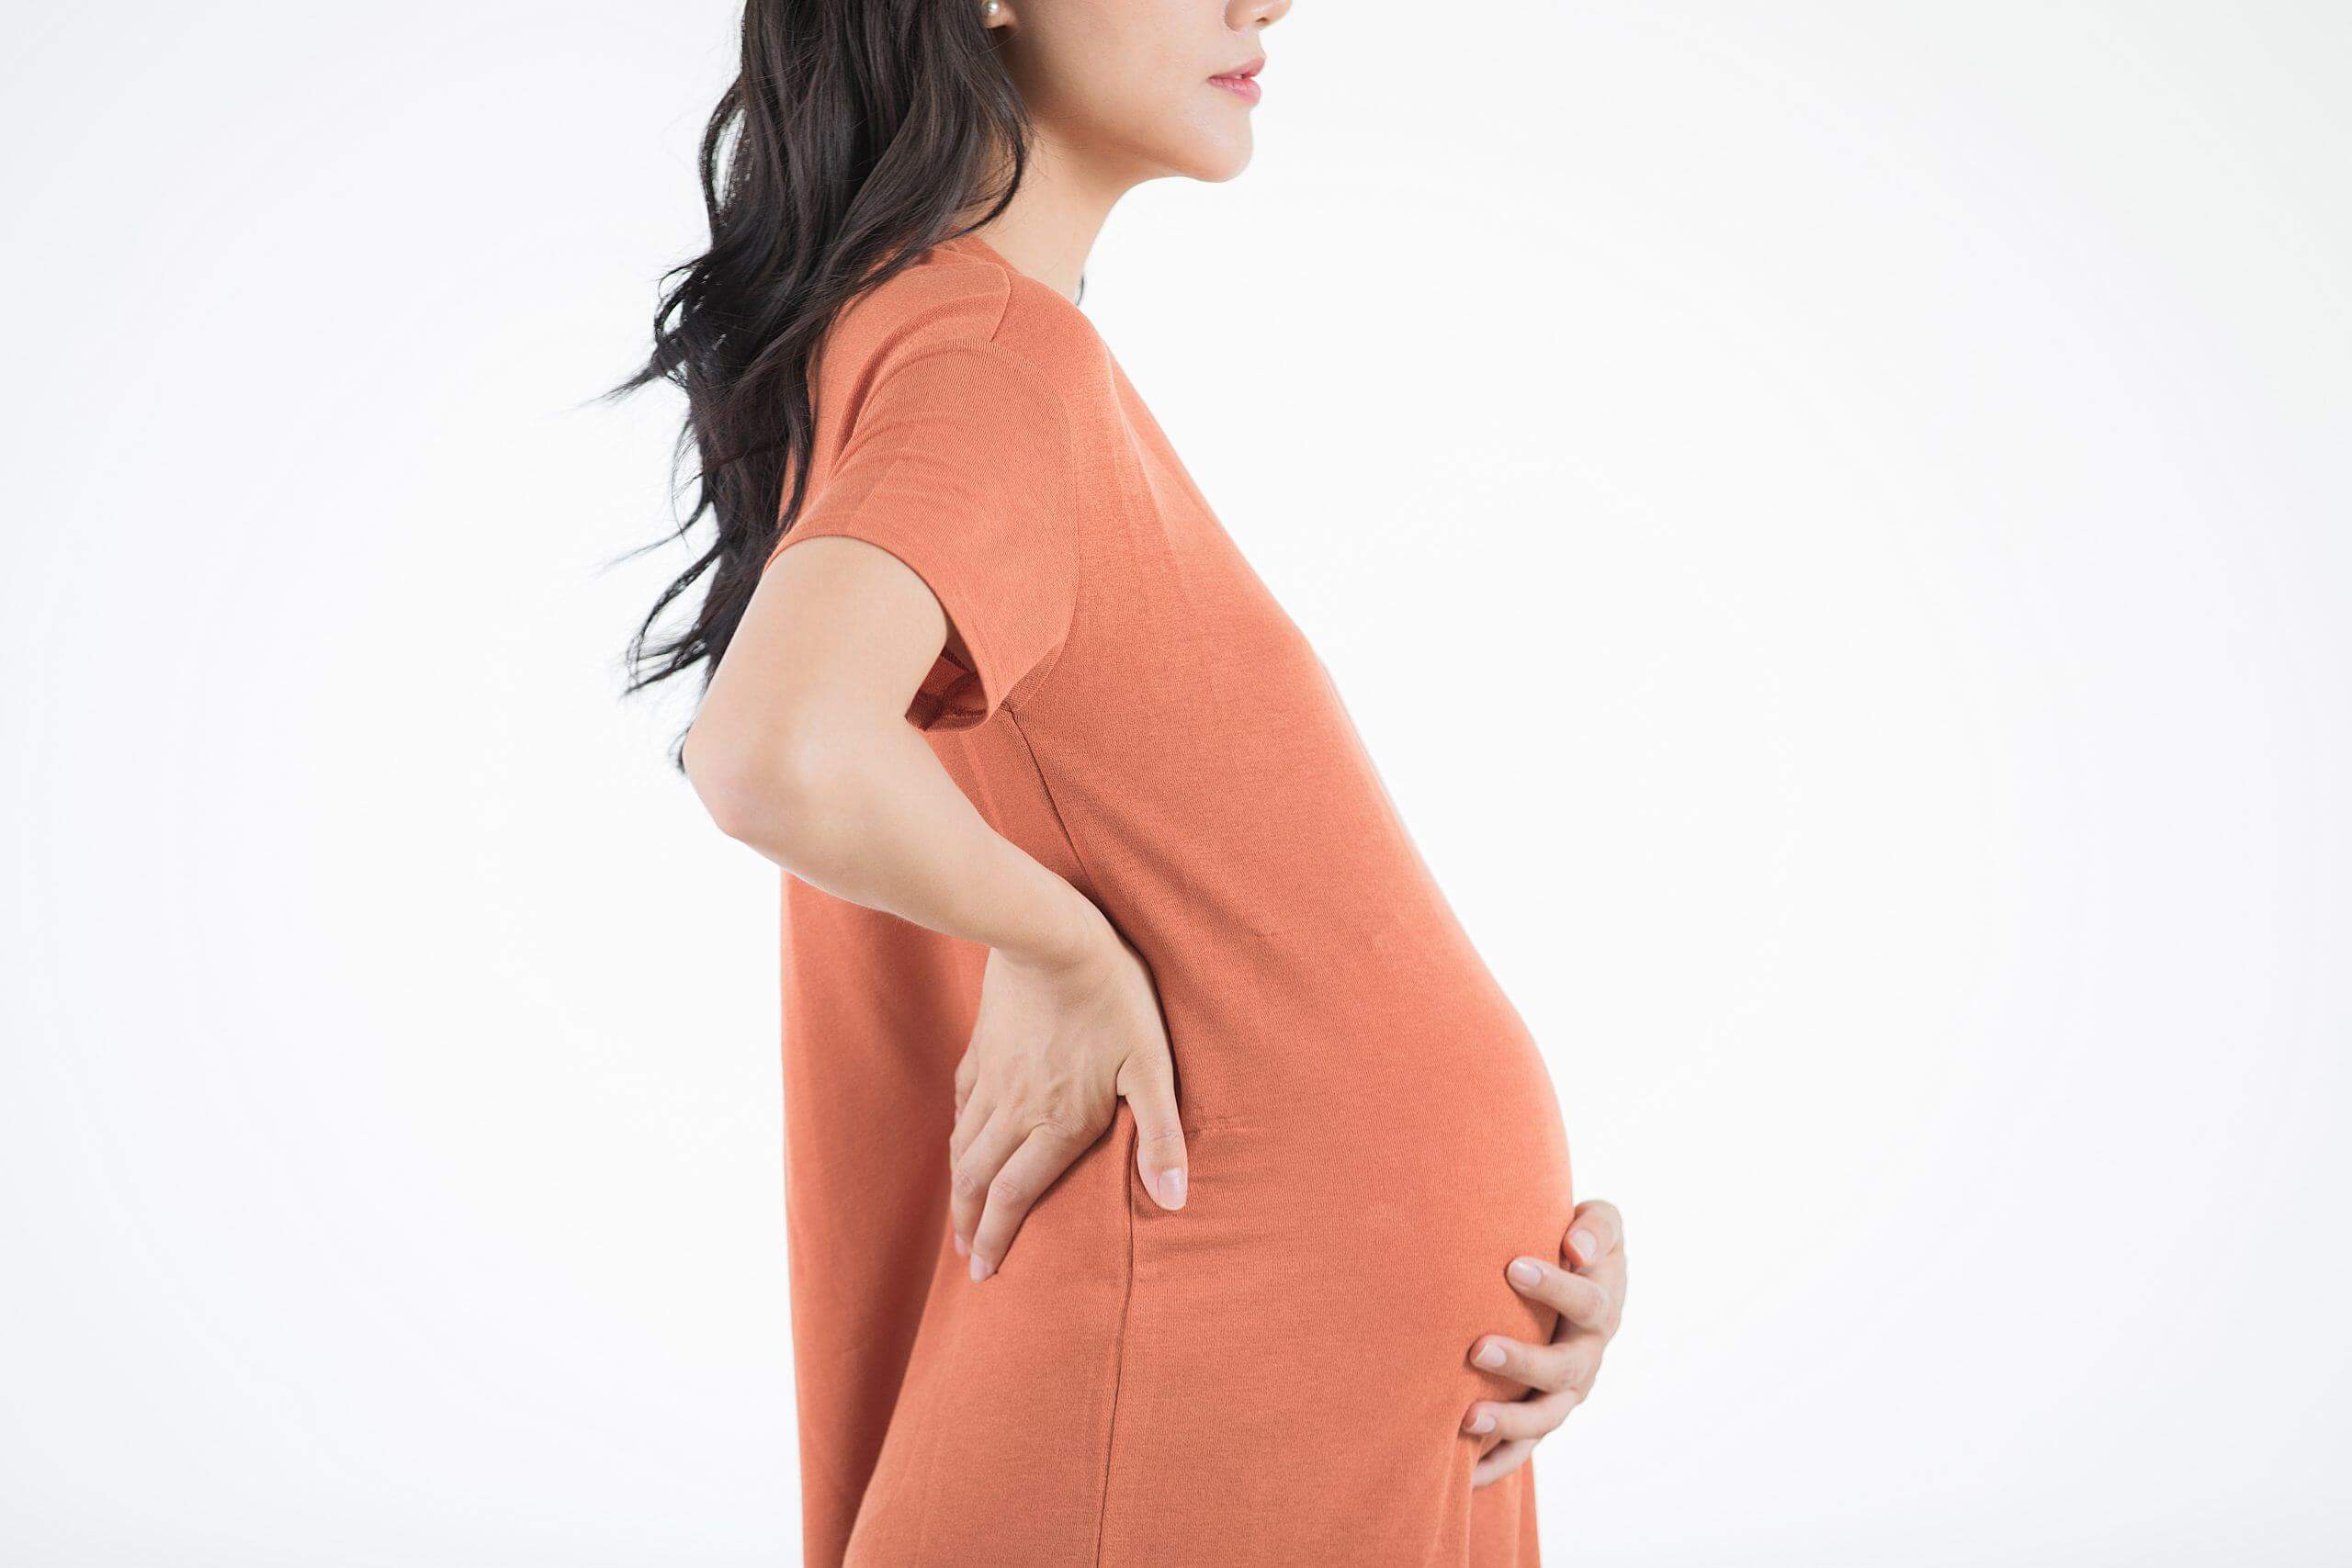 tâm lý phụ nữ khi mang thai